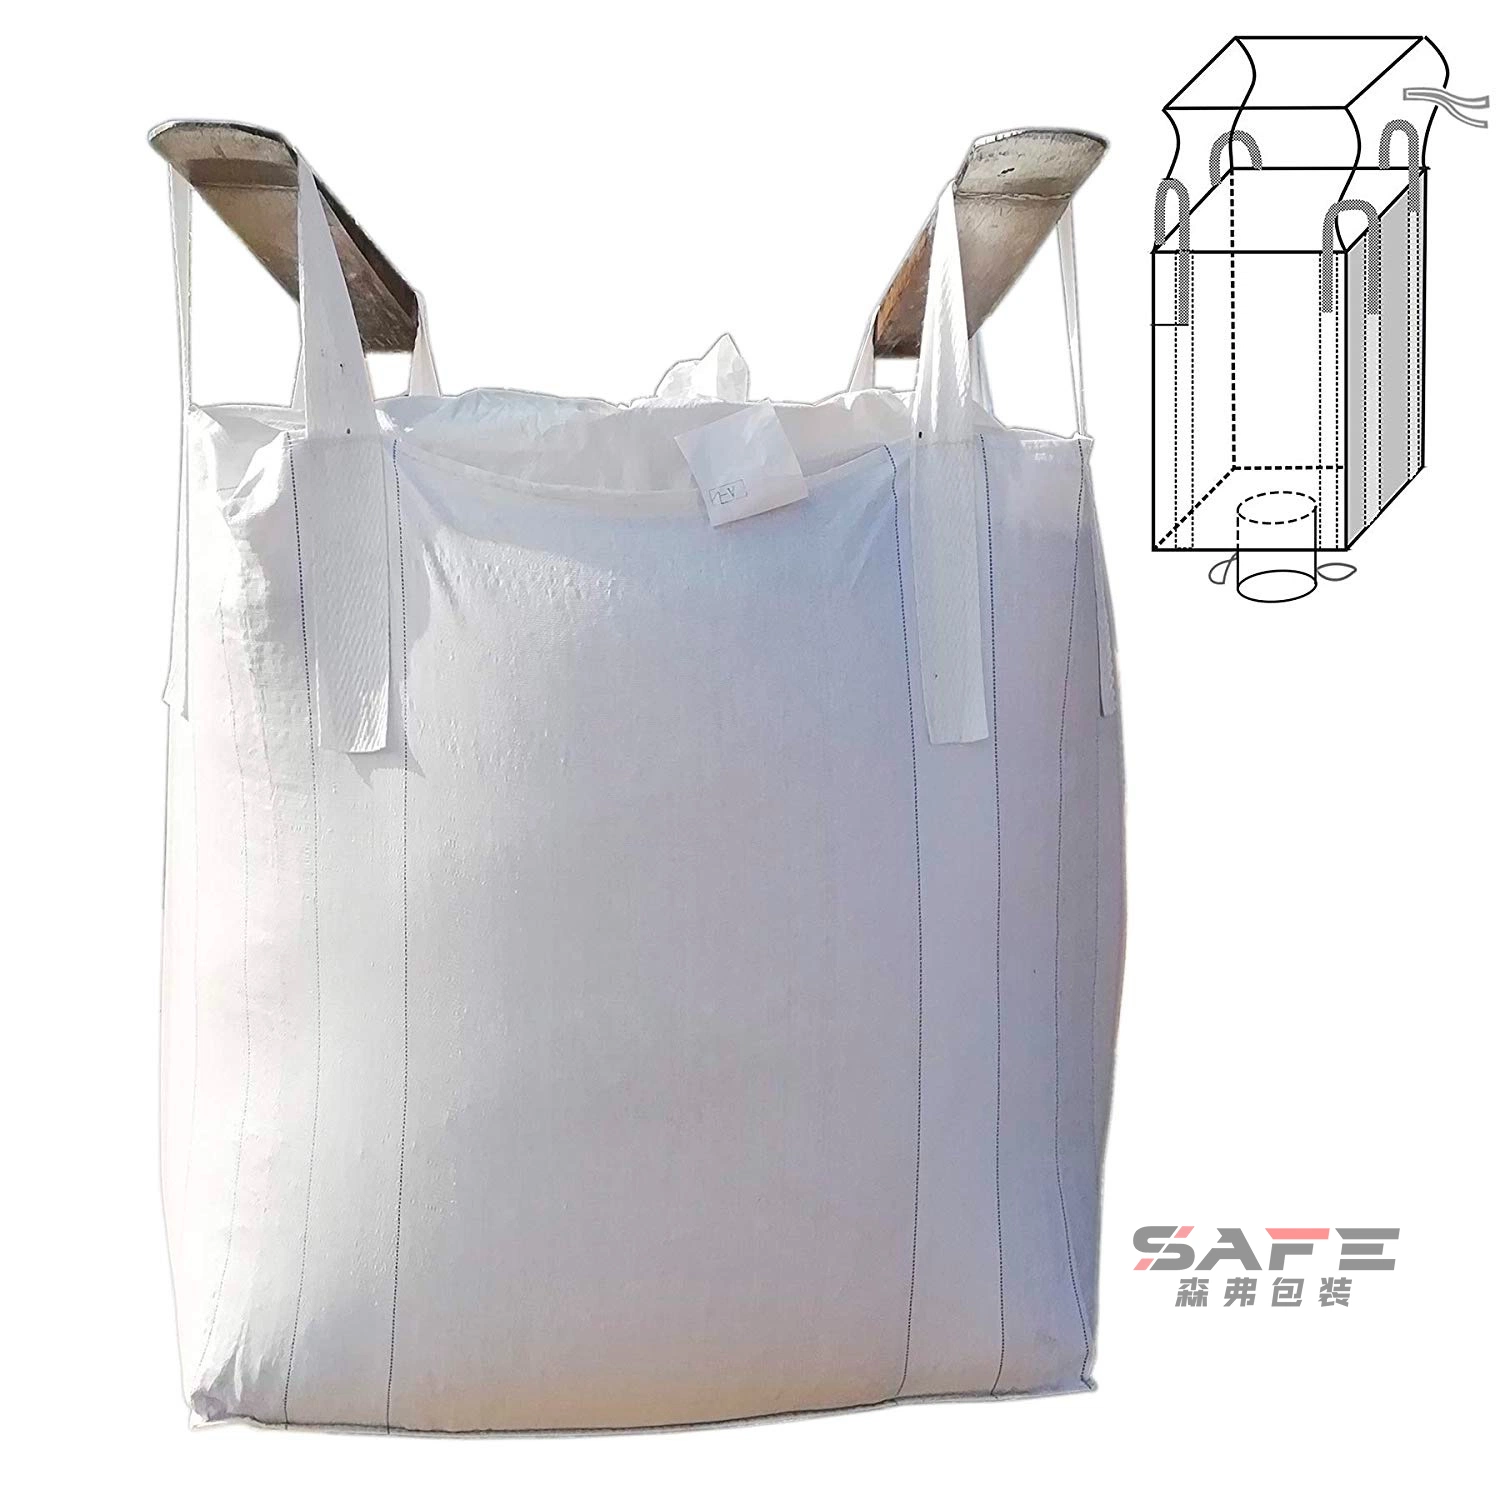 1000kg PP Woven FIBC HS Code for Jumbo Bags